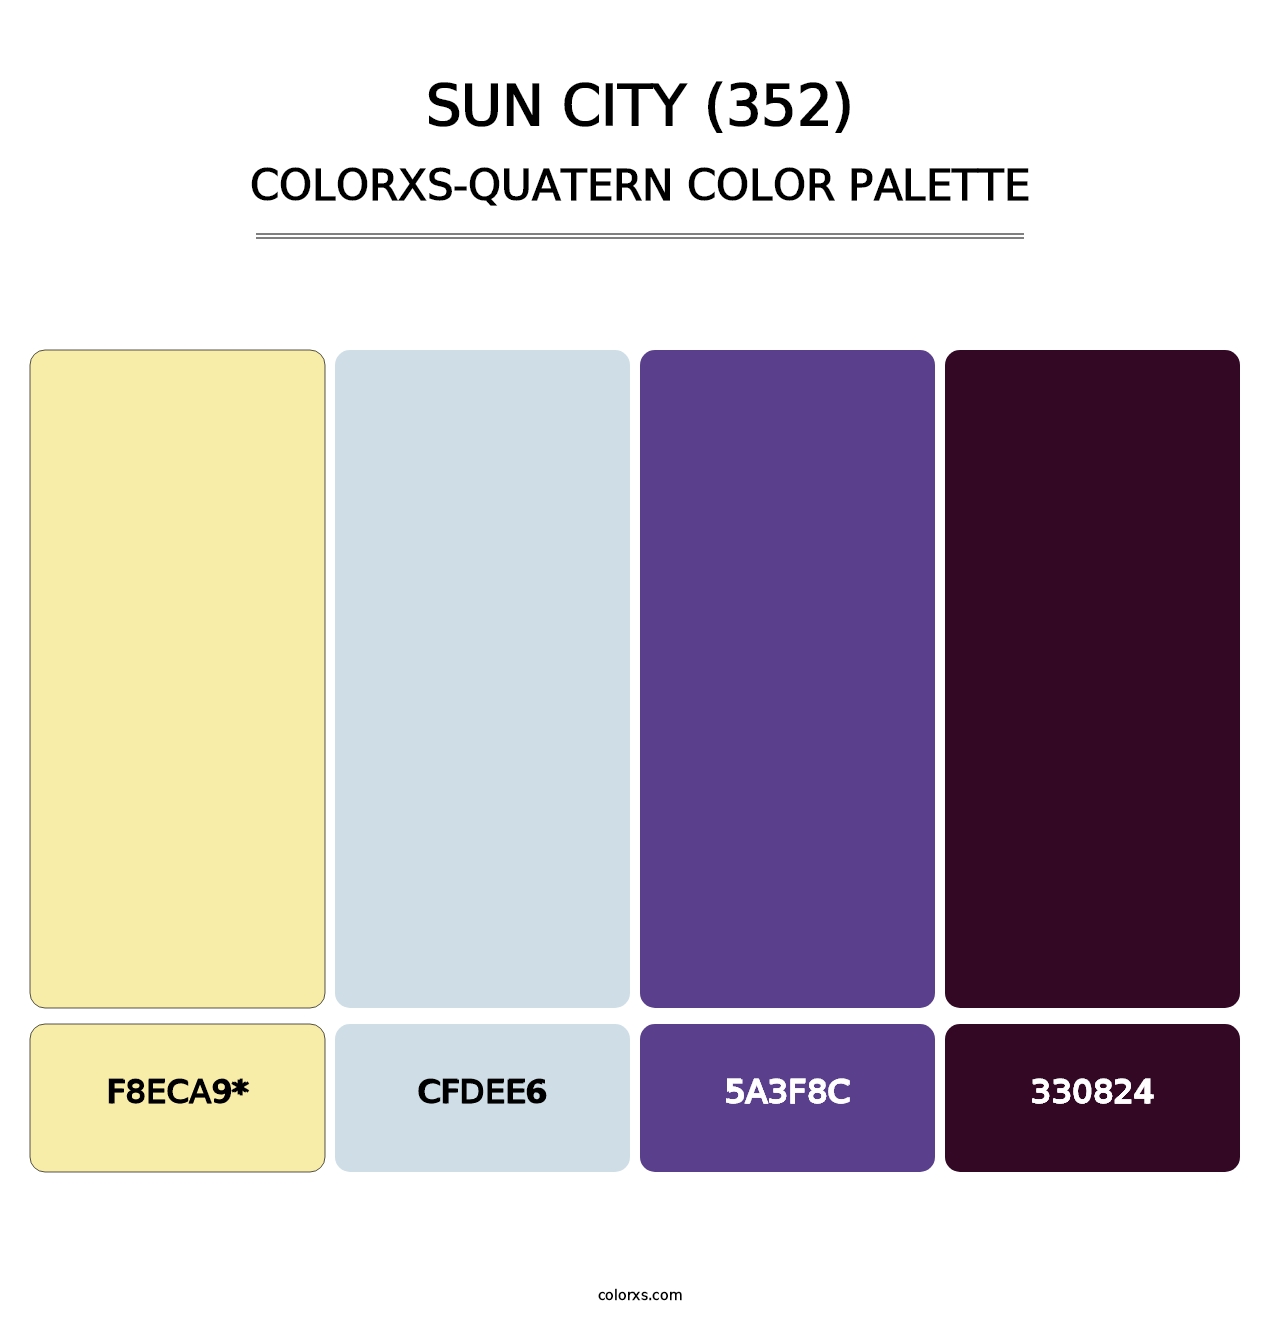 Sun City (352) - Colorxs Quatern Palette